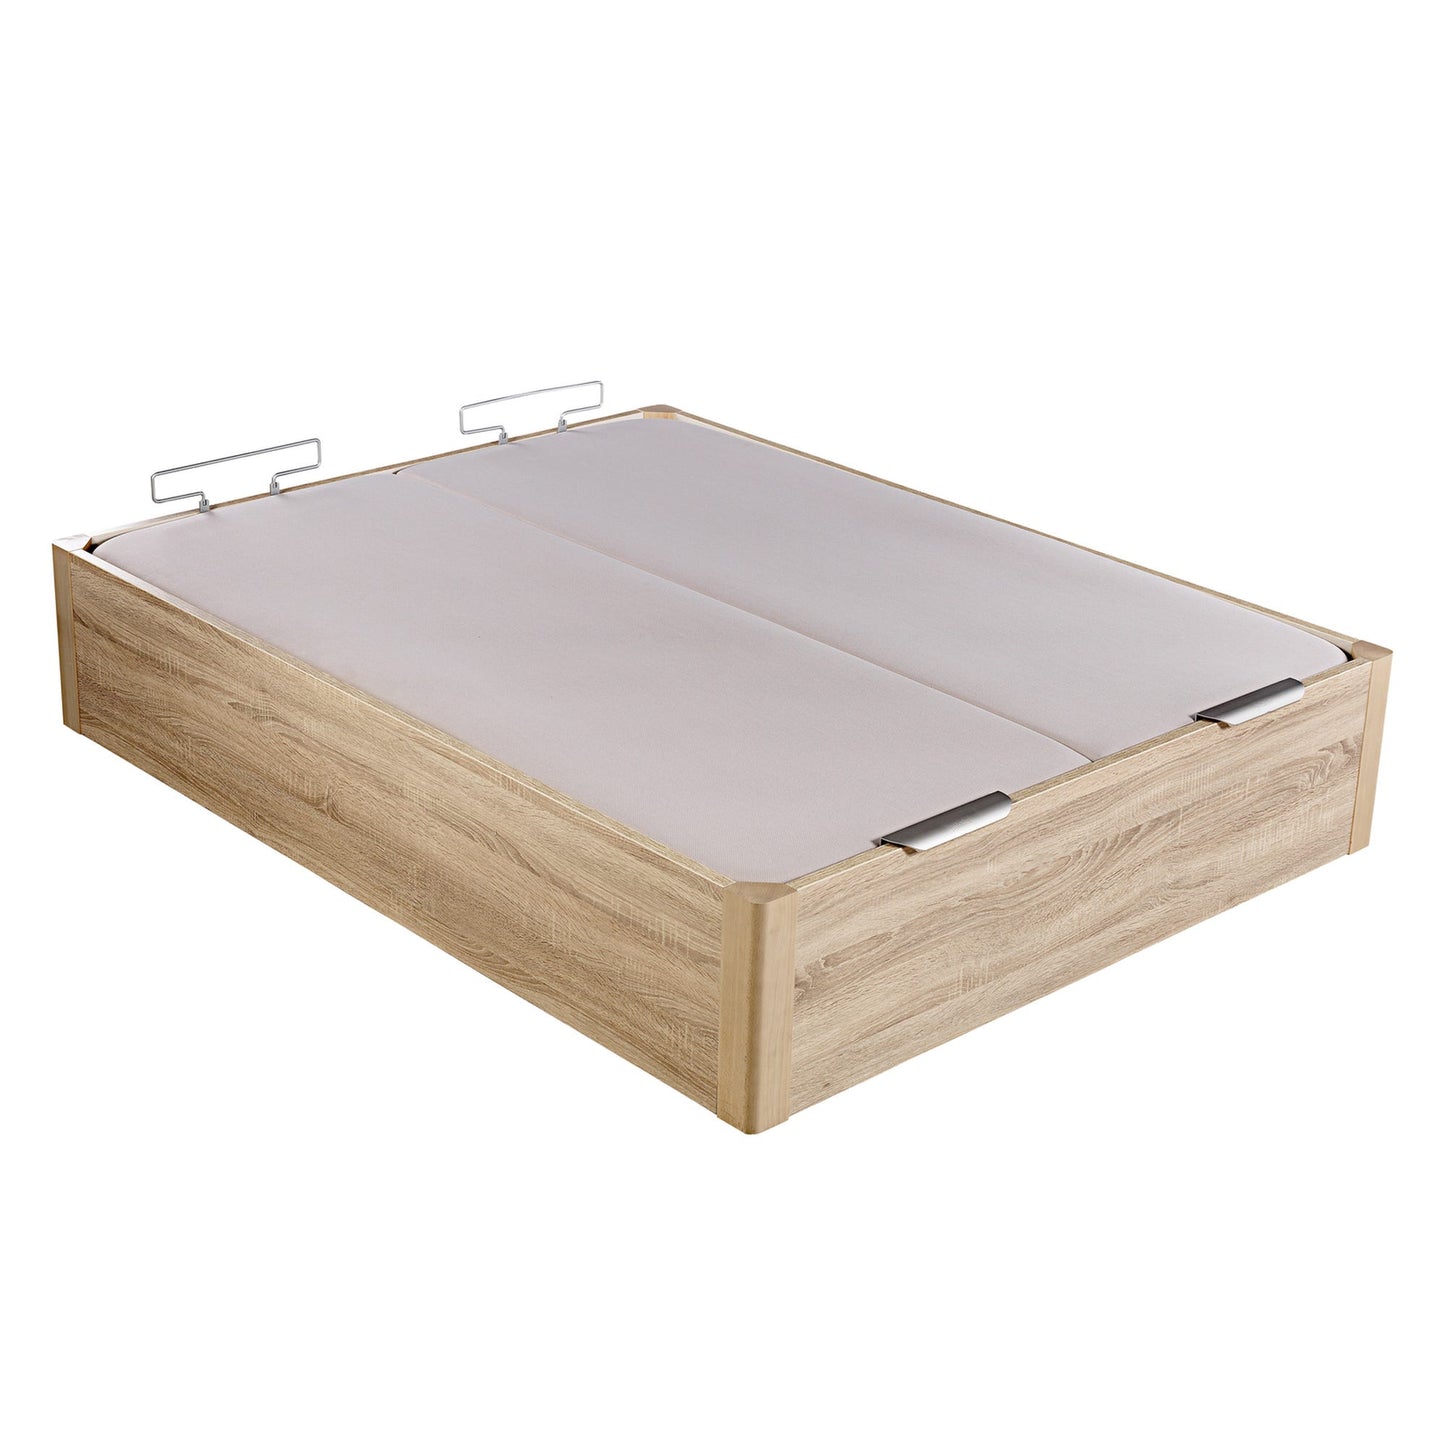 Canapé abatible de madera de alta capacidad tapa doble de color natural - DESIGN - 160x190